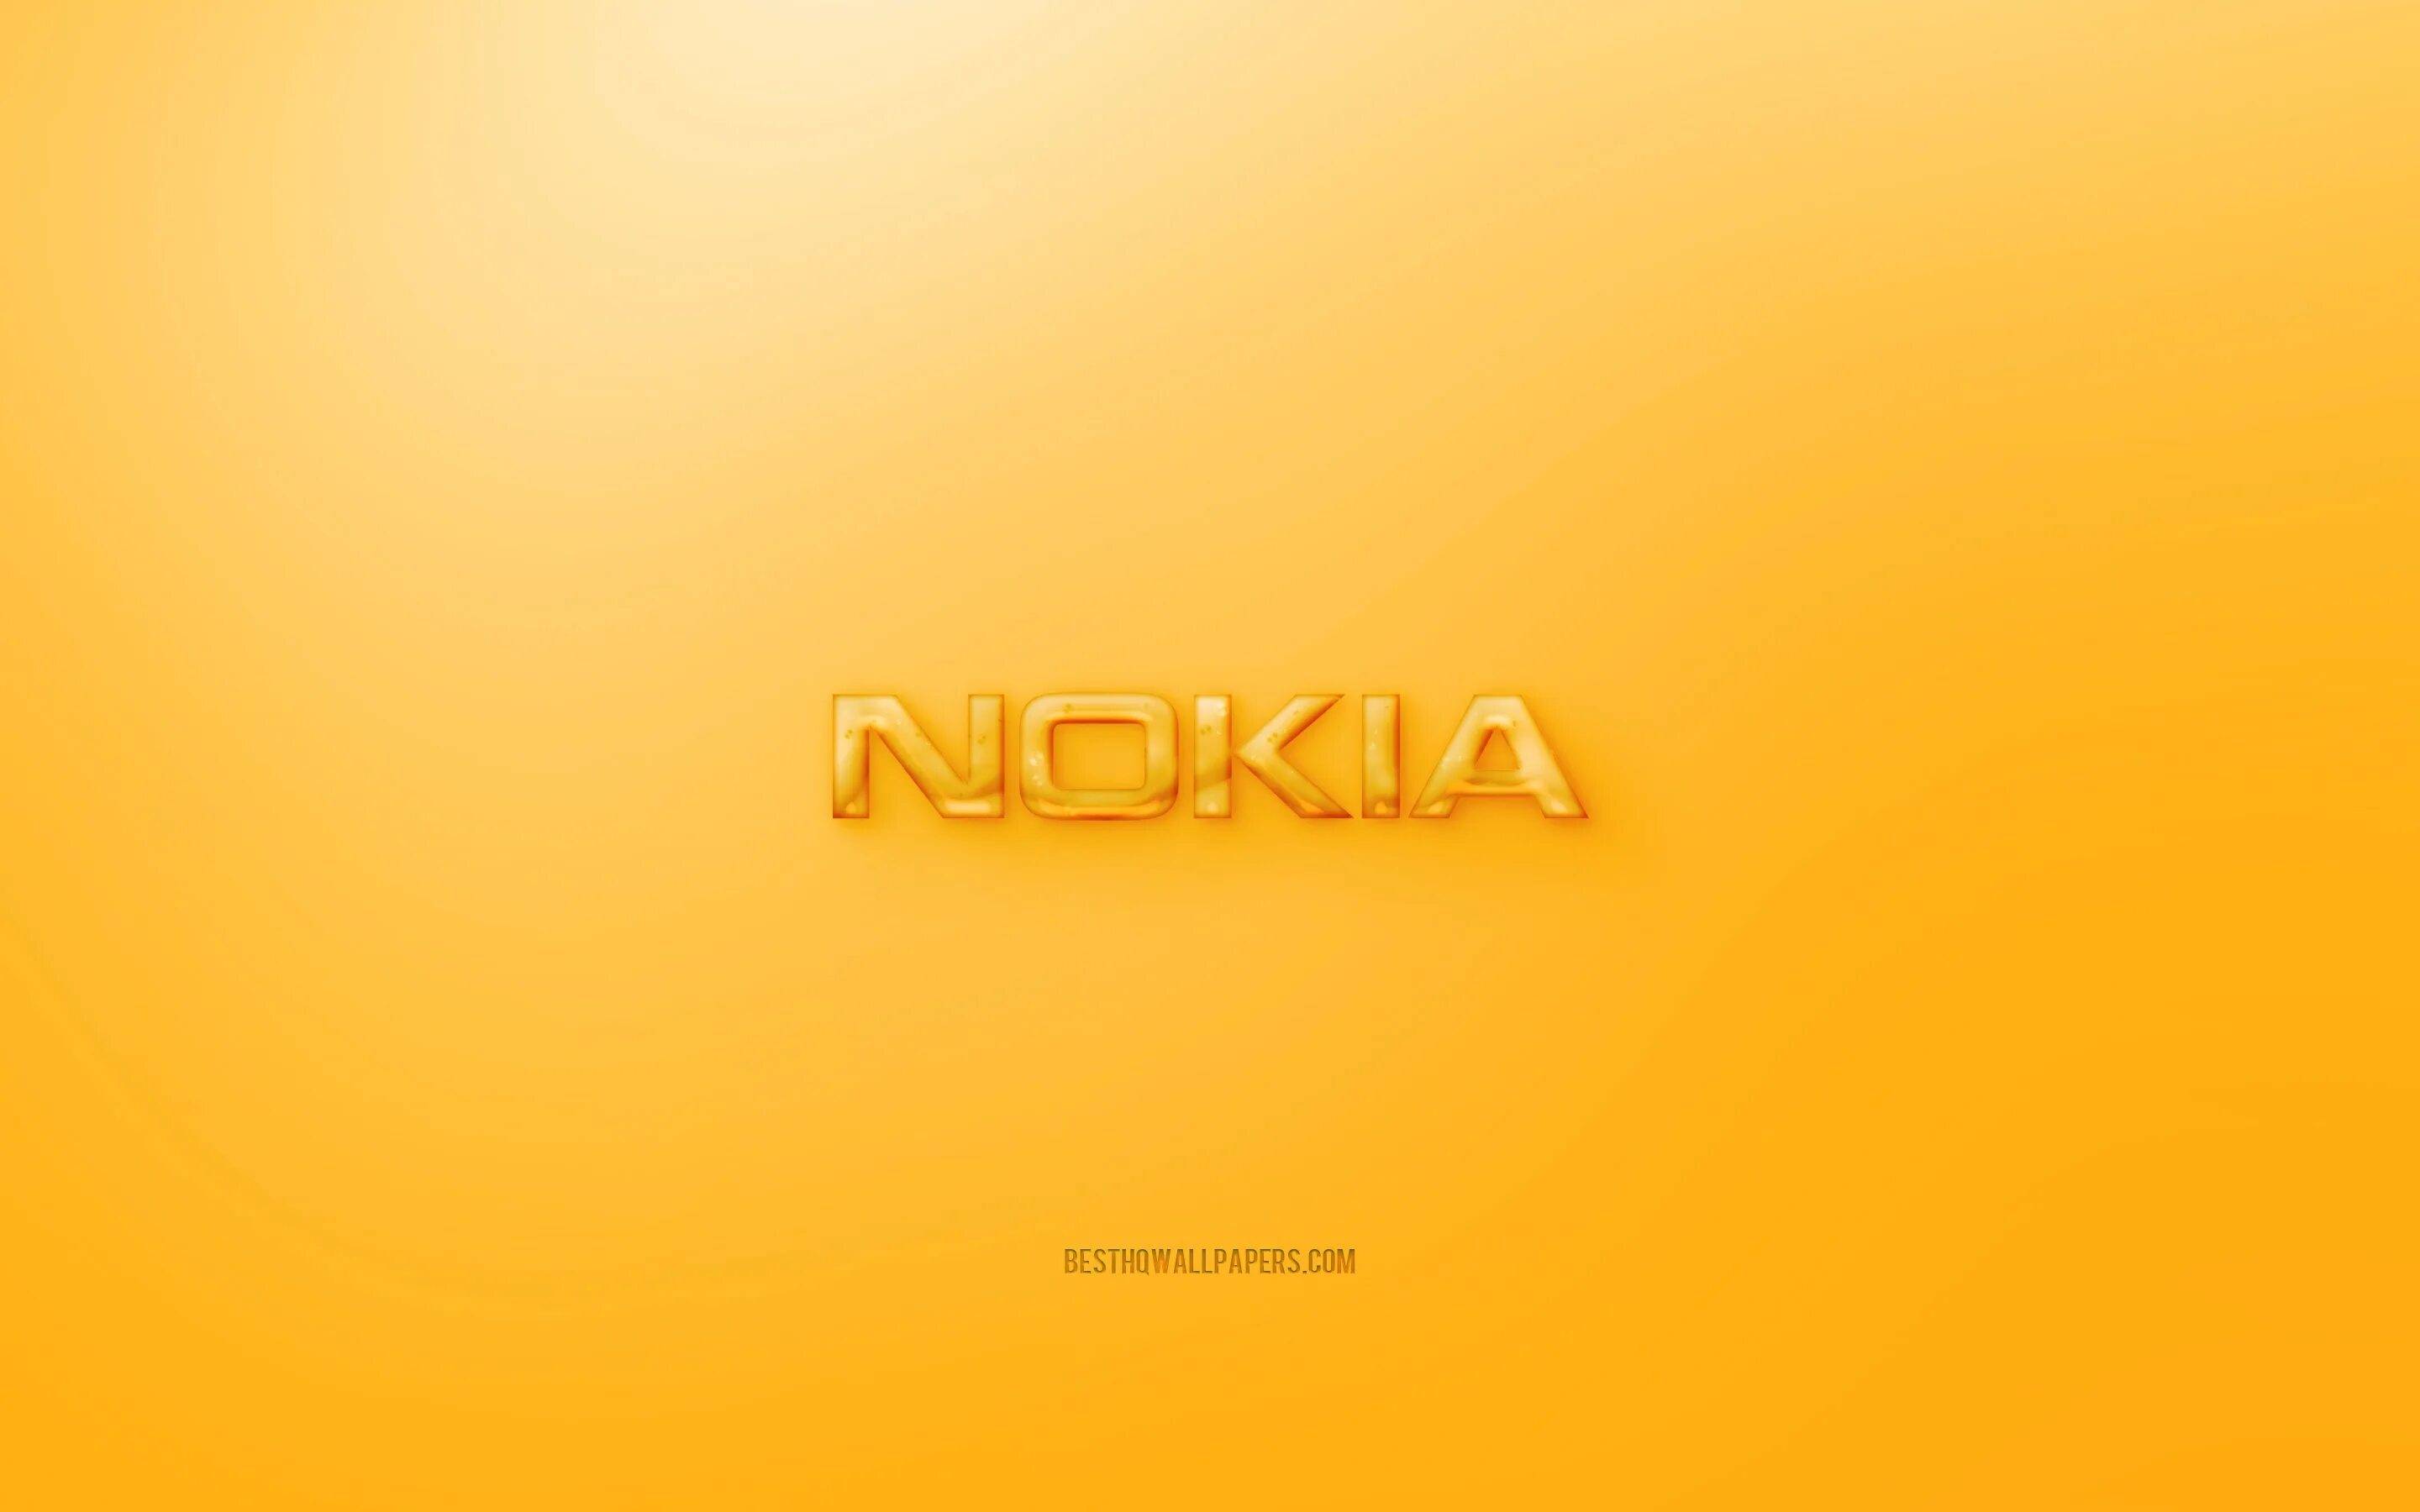 Обои на телефон нокиа. Фон нокиа. Обои Nokia. Фон обои нокия. Nokia логотип обои.